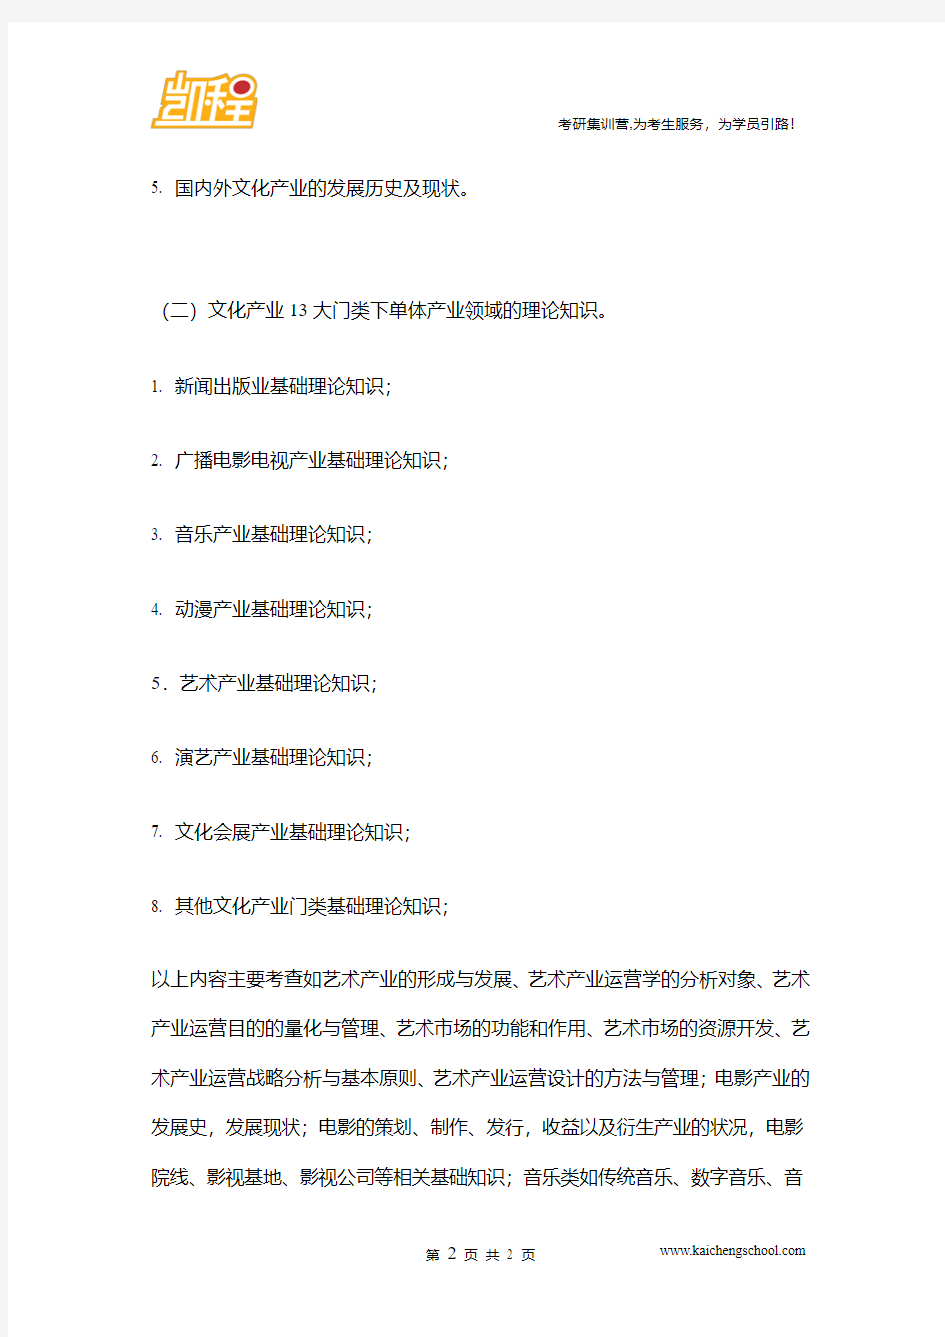 中国传媒大学文化产业考试大纲